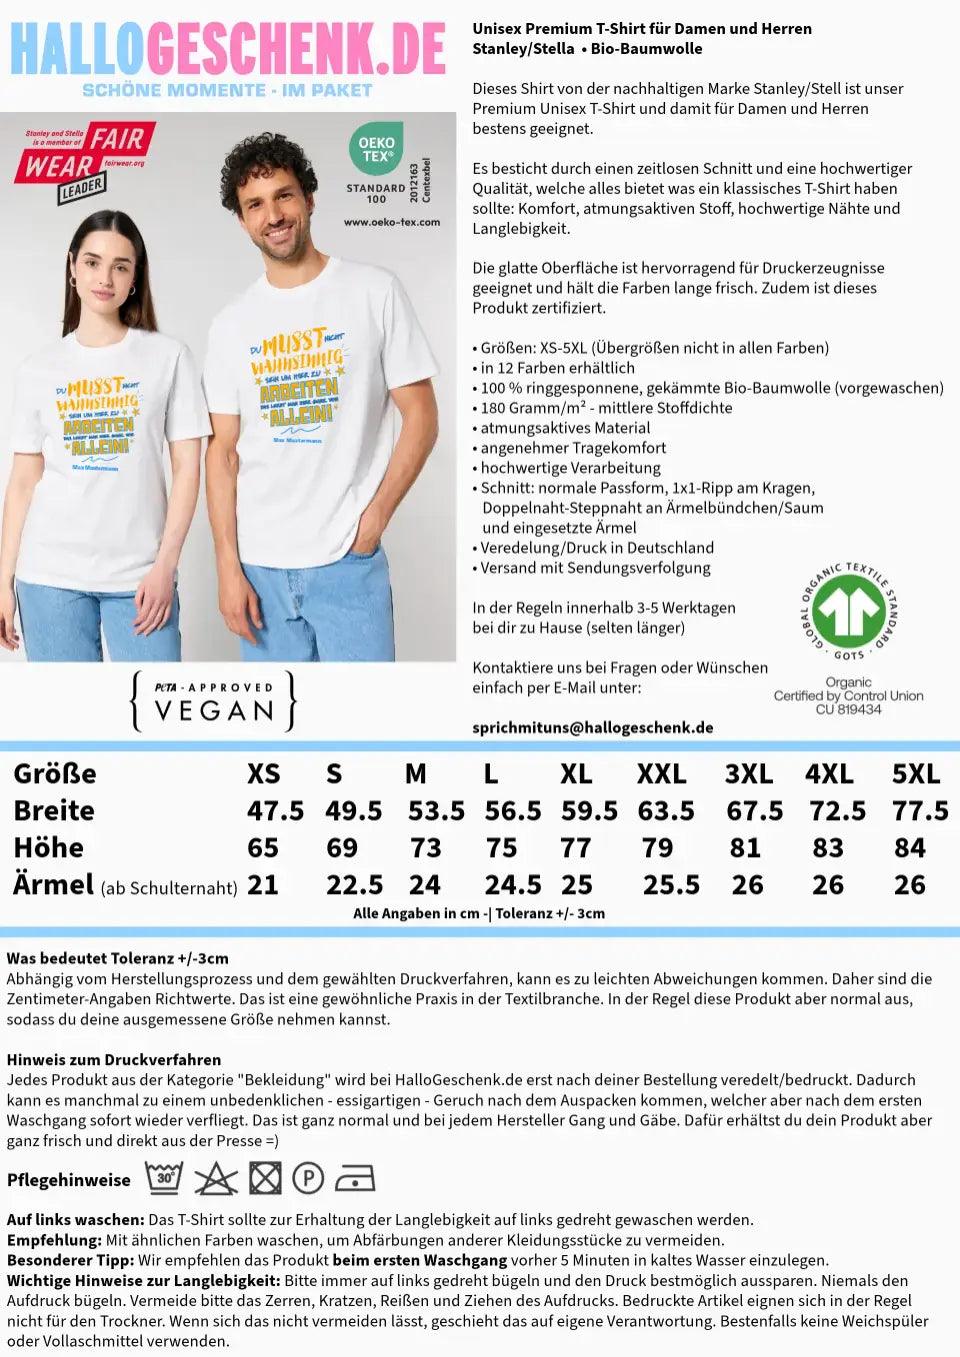 Arbeitnehmer "Wahnsinnig" mit Wunschname, (personalisierbar) - Unisex Premium T-Shirt XS-5XL aus Bio-Baumwolle für Damen & Herren - HalloGeschenk.de